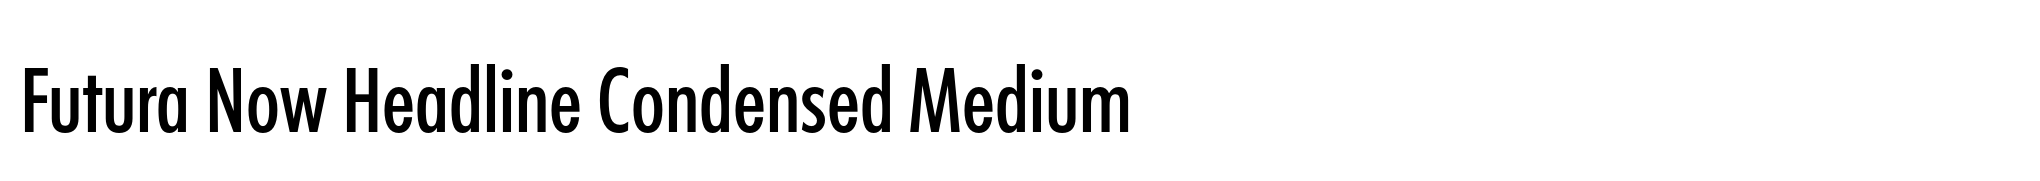 Futura Now Headline Condensed Medium image